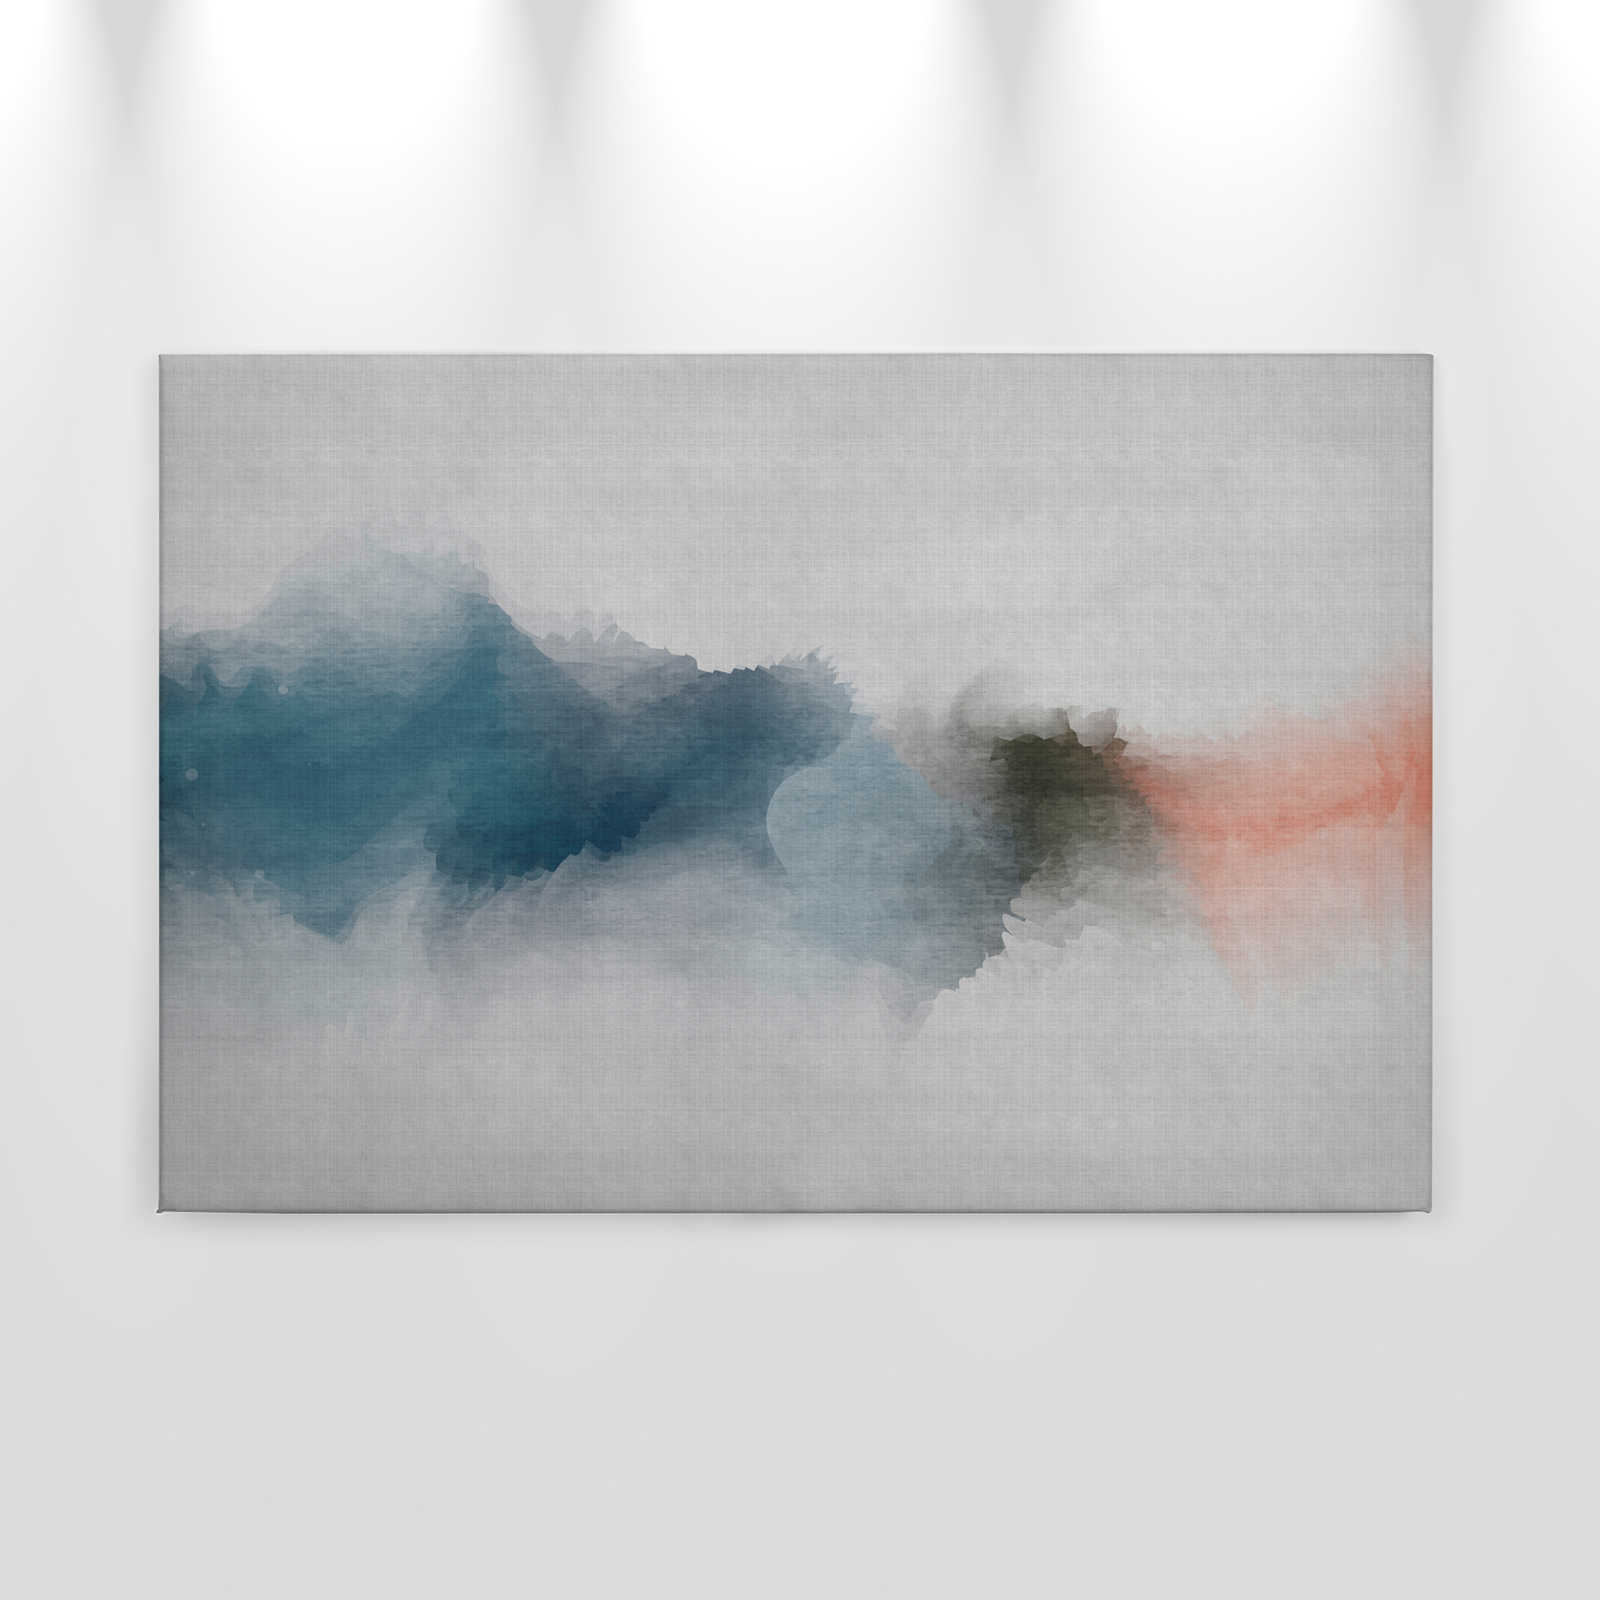             Sogno ad occhi aperti 1 - Quadro su tela in stile acquerello minimalista - Natura qualita consistenza in lino naturale - 0,90 m x 0,60 m
        